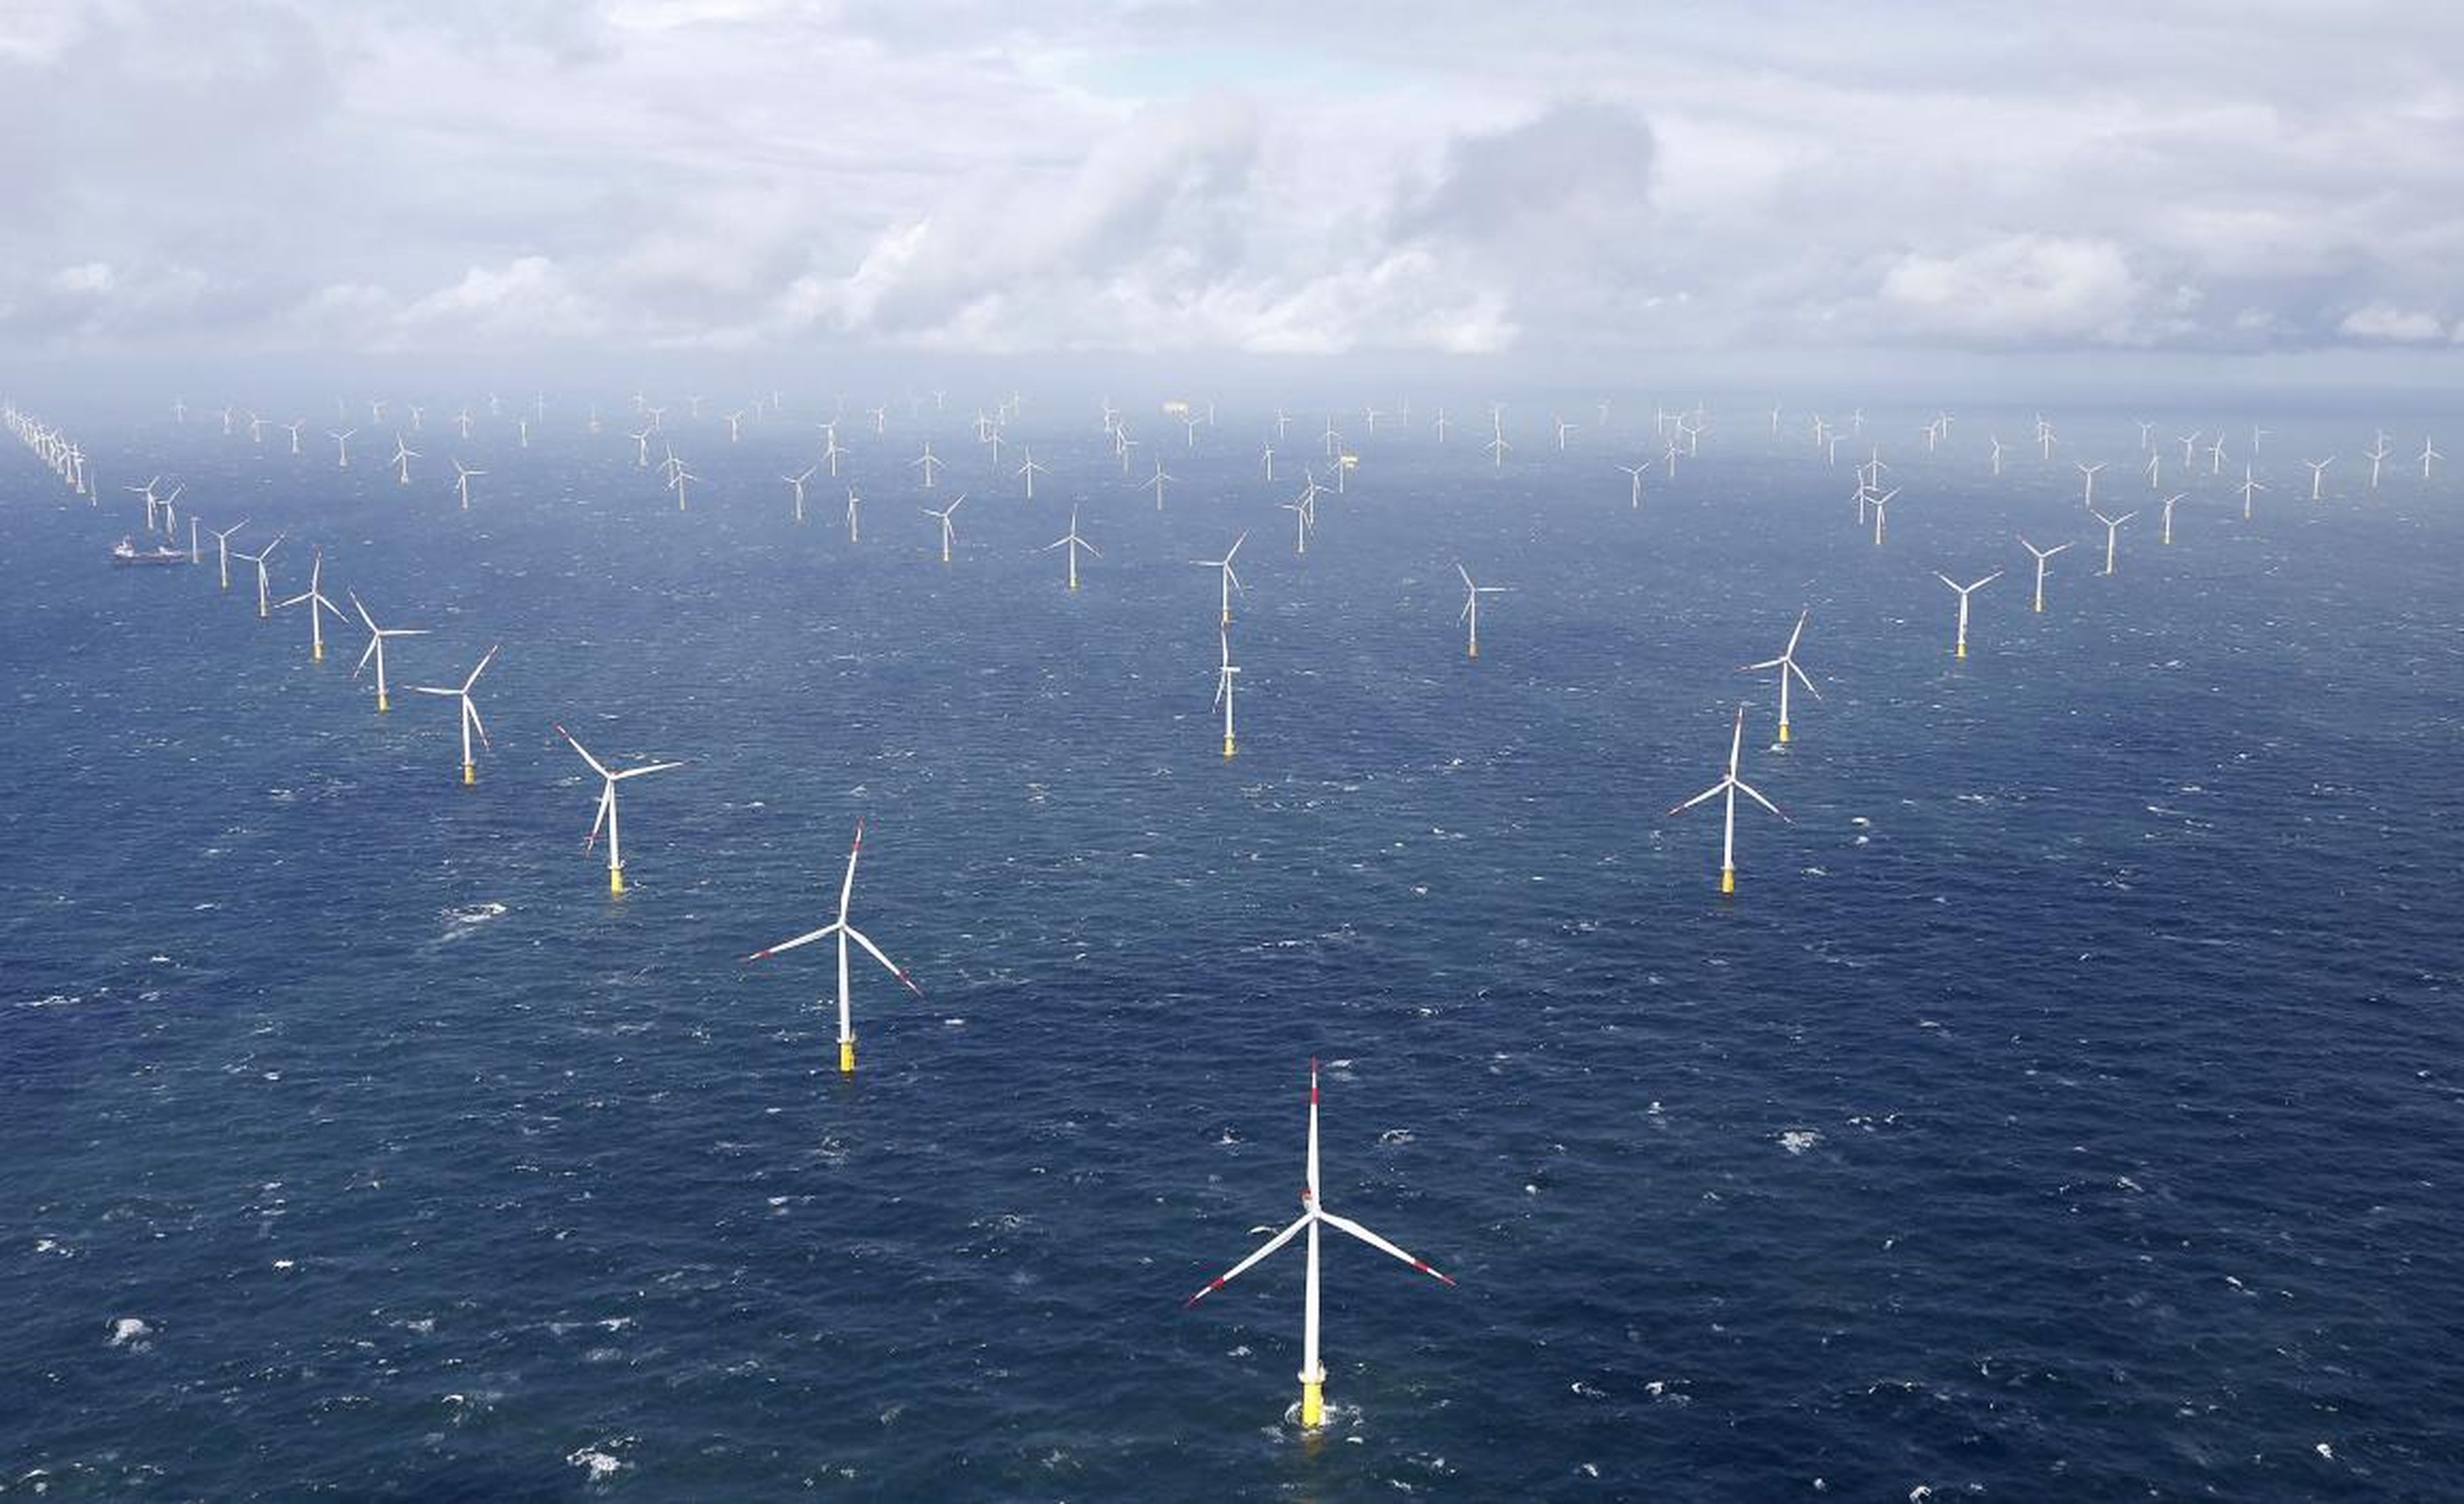 Turbinas eólicas generadoras de energía en el parque eólico offshore Amrumbank West cerca de la isla de Amrum, Alemania el 4 de septiembre de 2015.